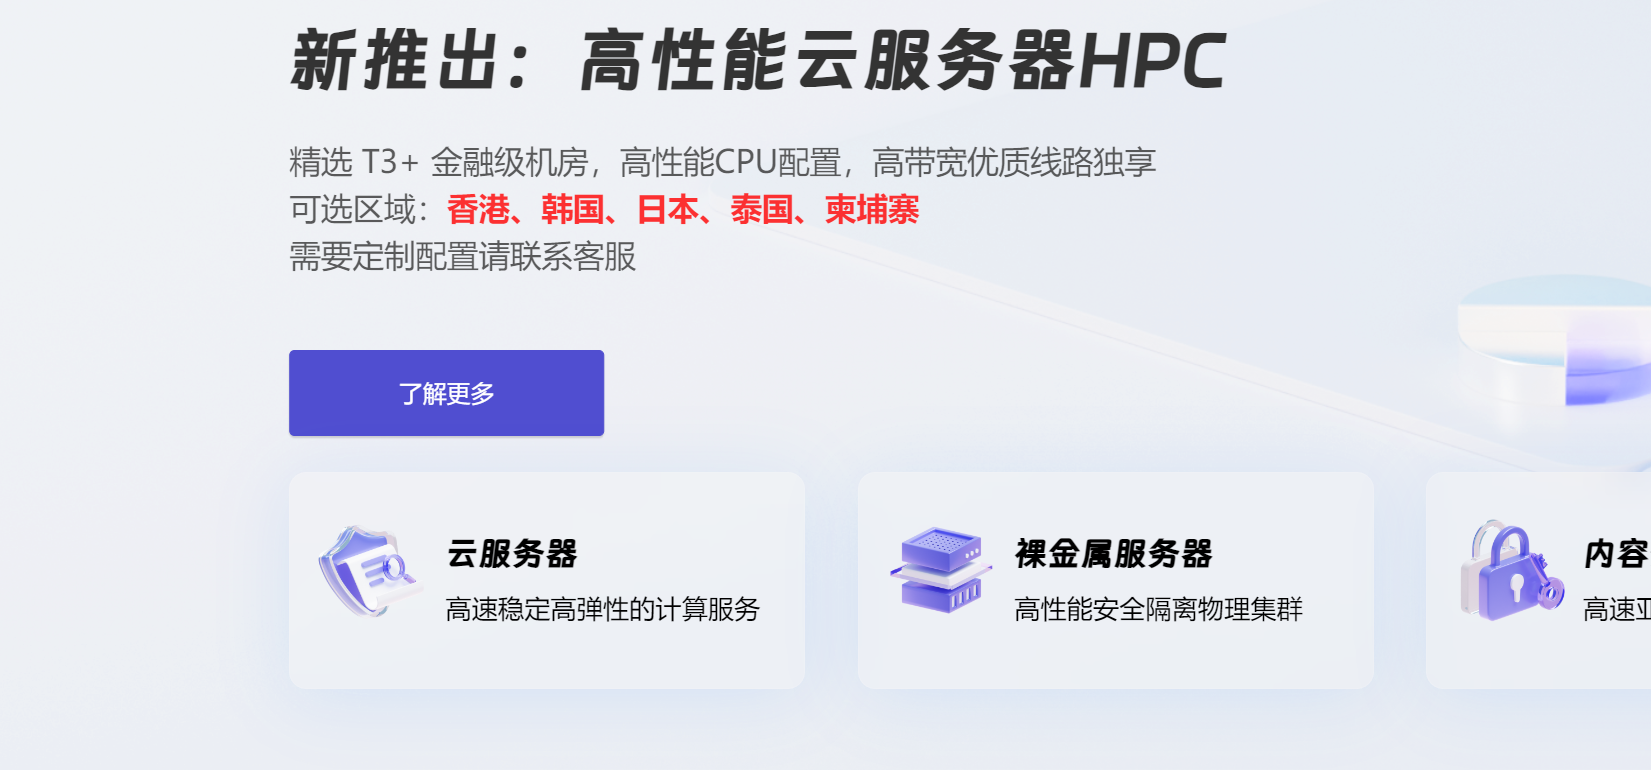 coalcloud-炭云-新上香港带宽竞技场-BGP线路-无限流量-26CNY月付起-1Gbps带宽